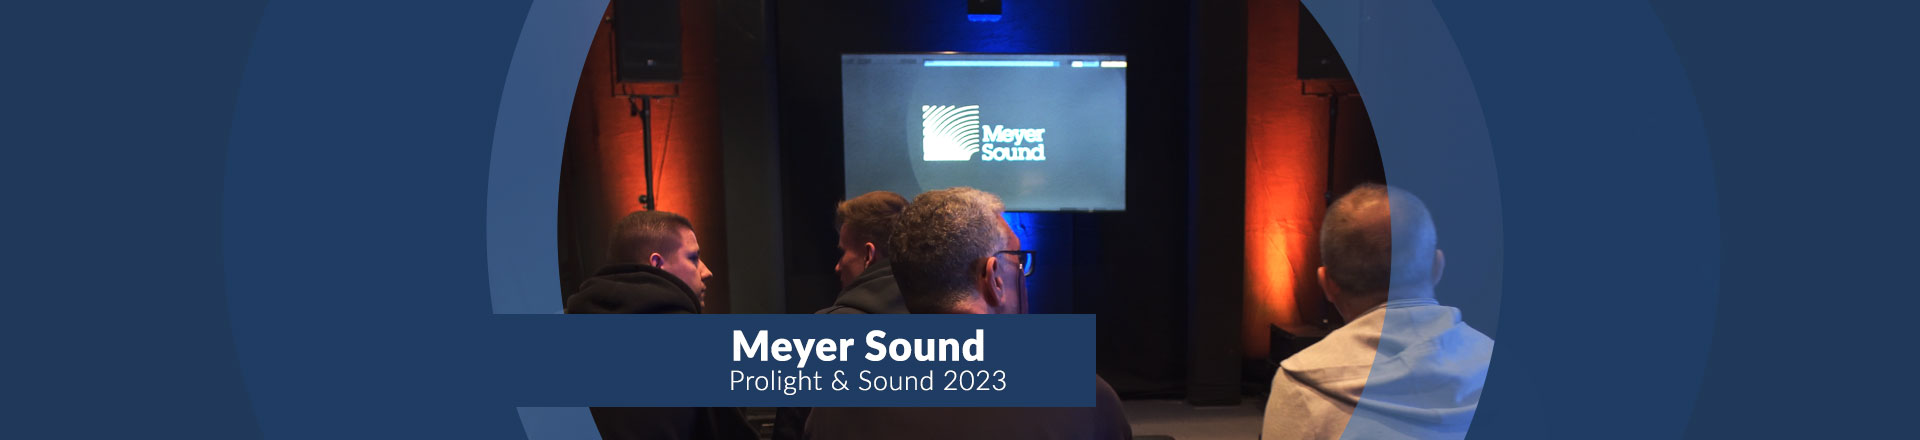 Bardzo ciekawy program Meyer Sound na PL+S 2023